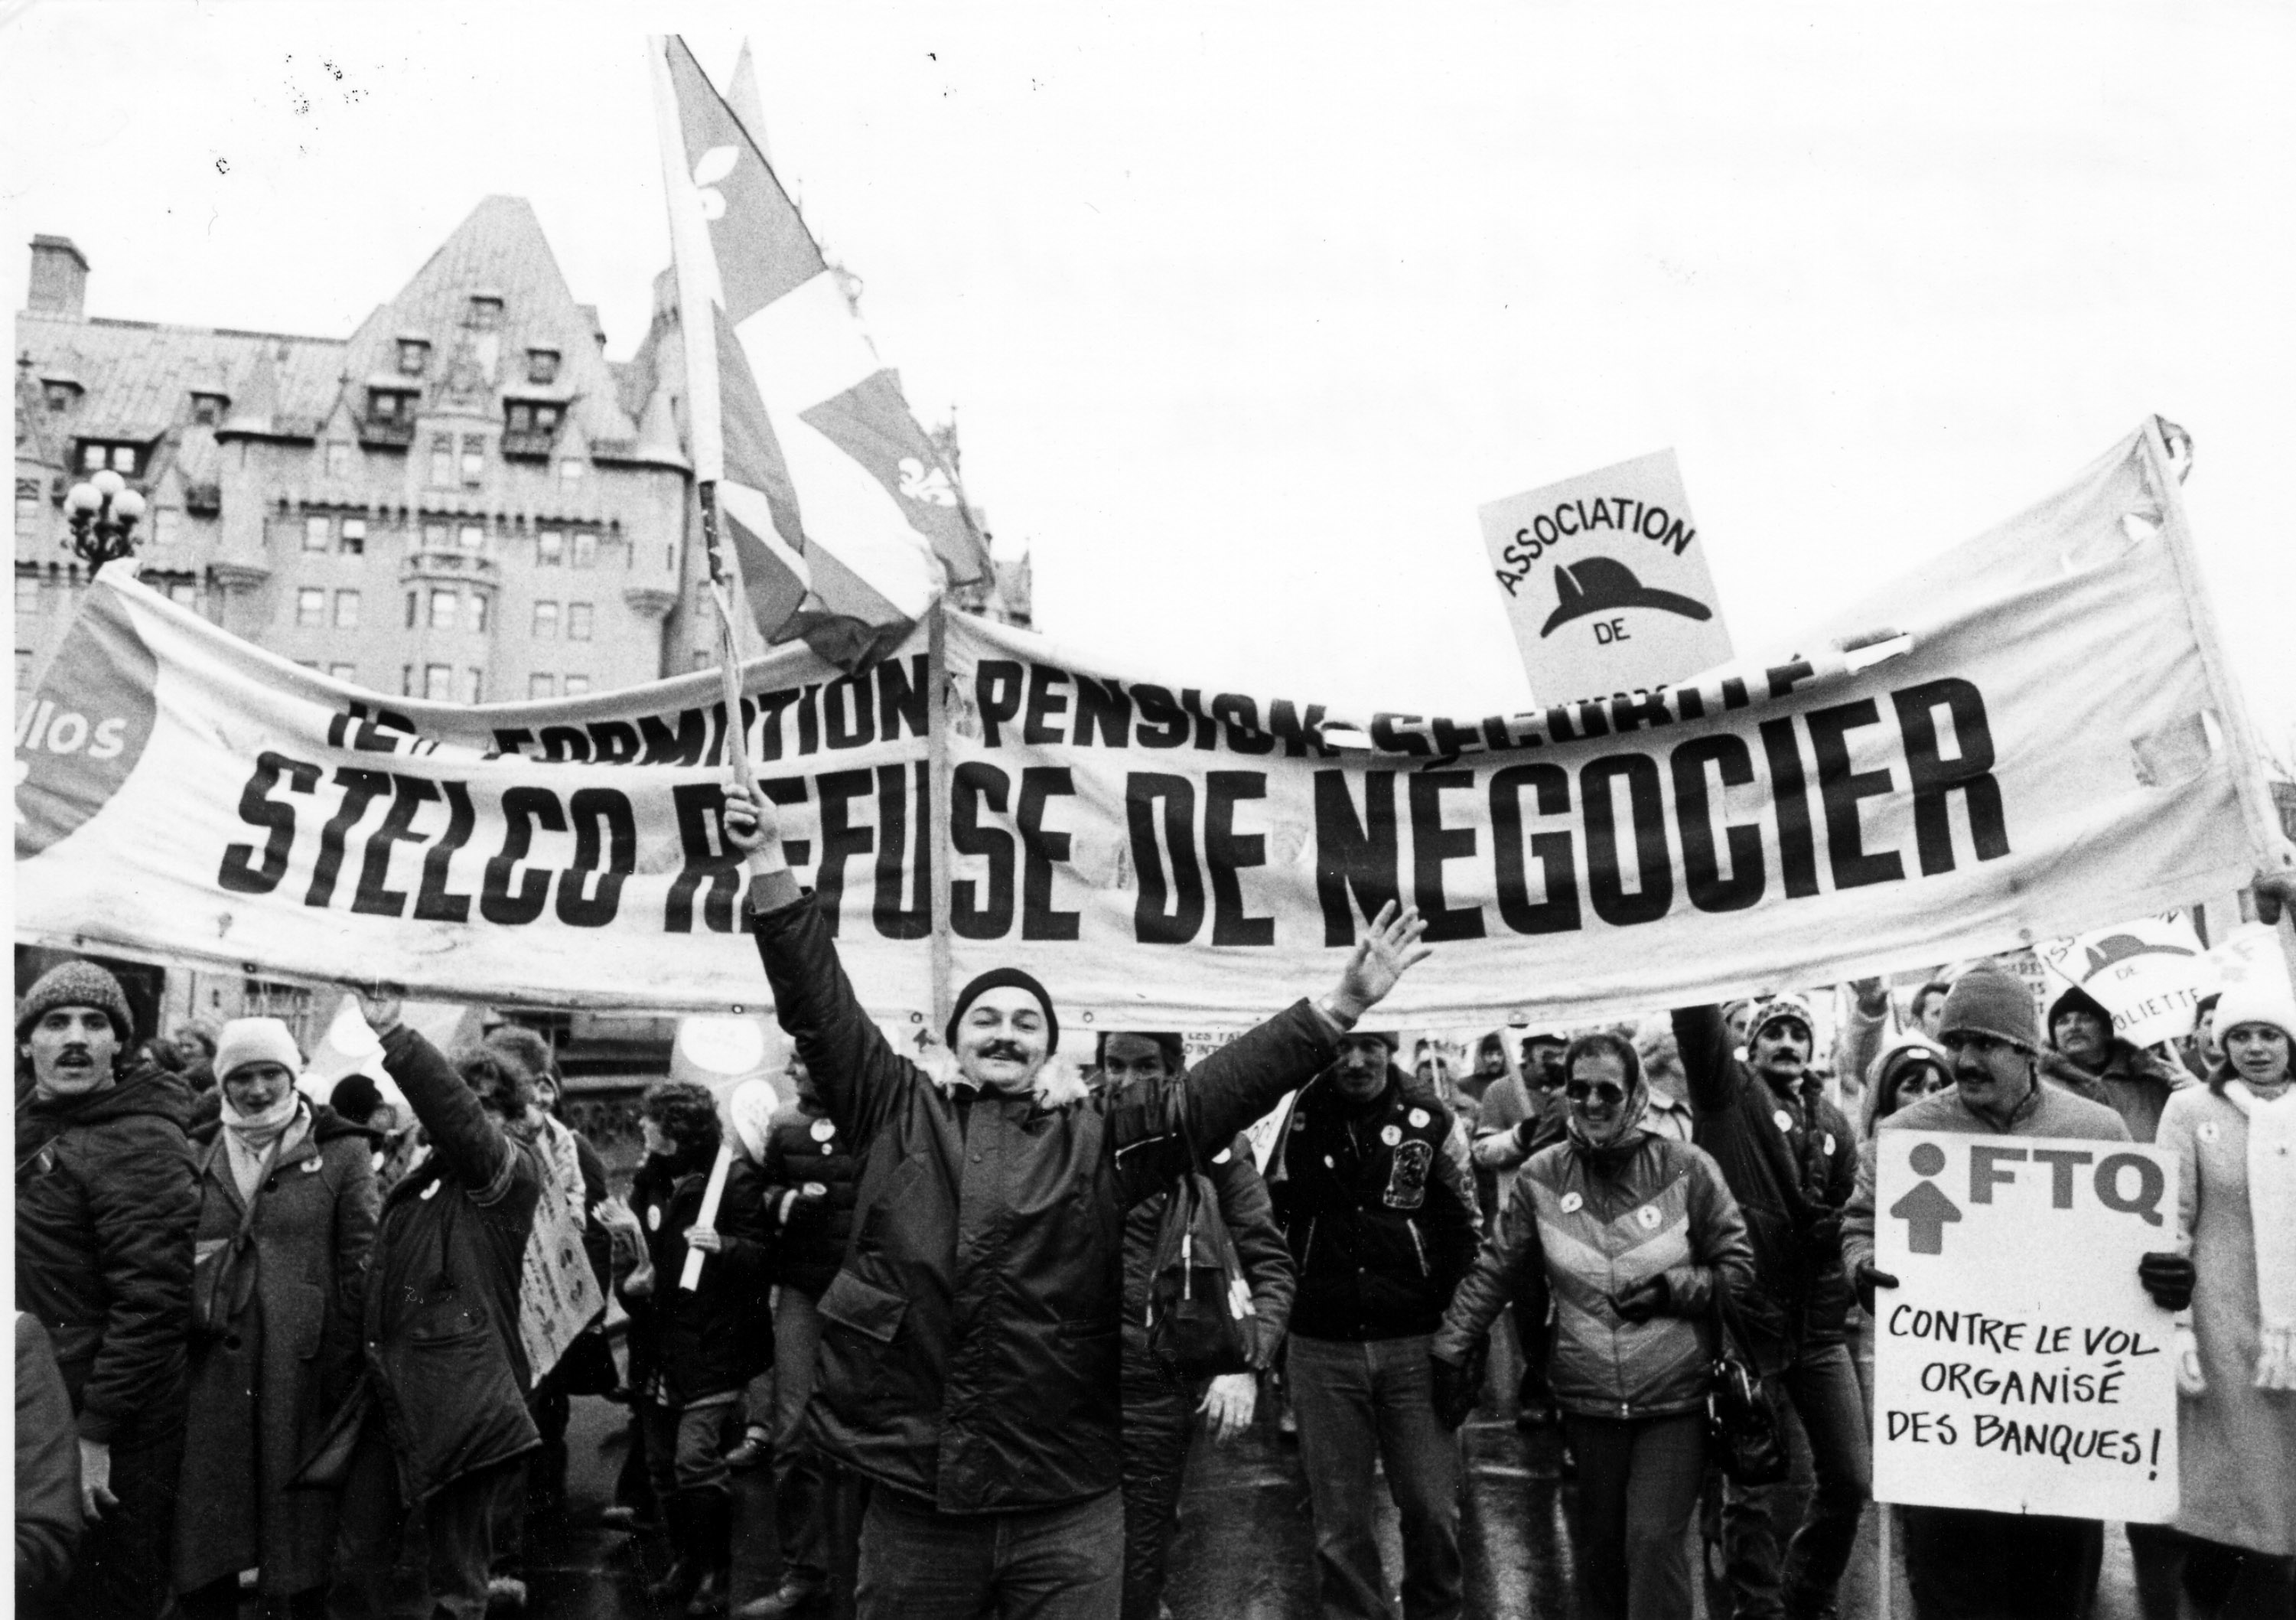 Des travailleurs manifestent en brandissant une banderole portant l'inscription "Formation - Pension - Sécurité LA STELCO REFUSE DE NÉGOCIER".